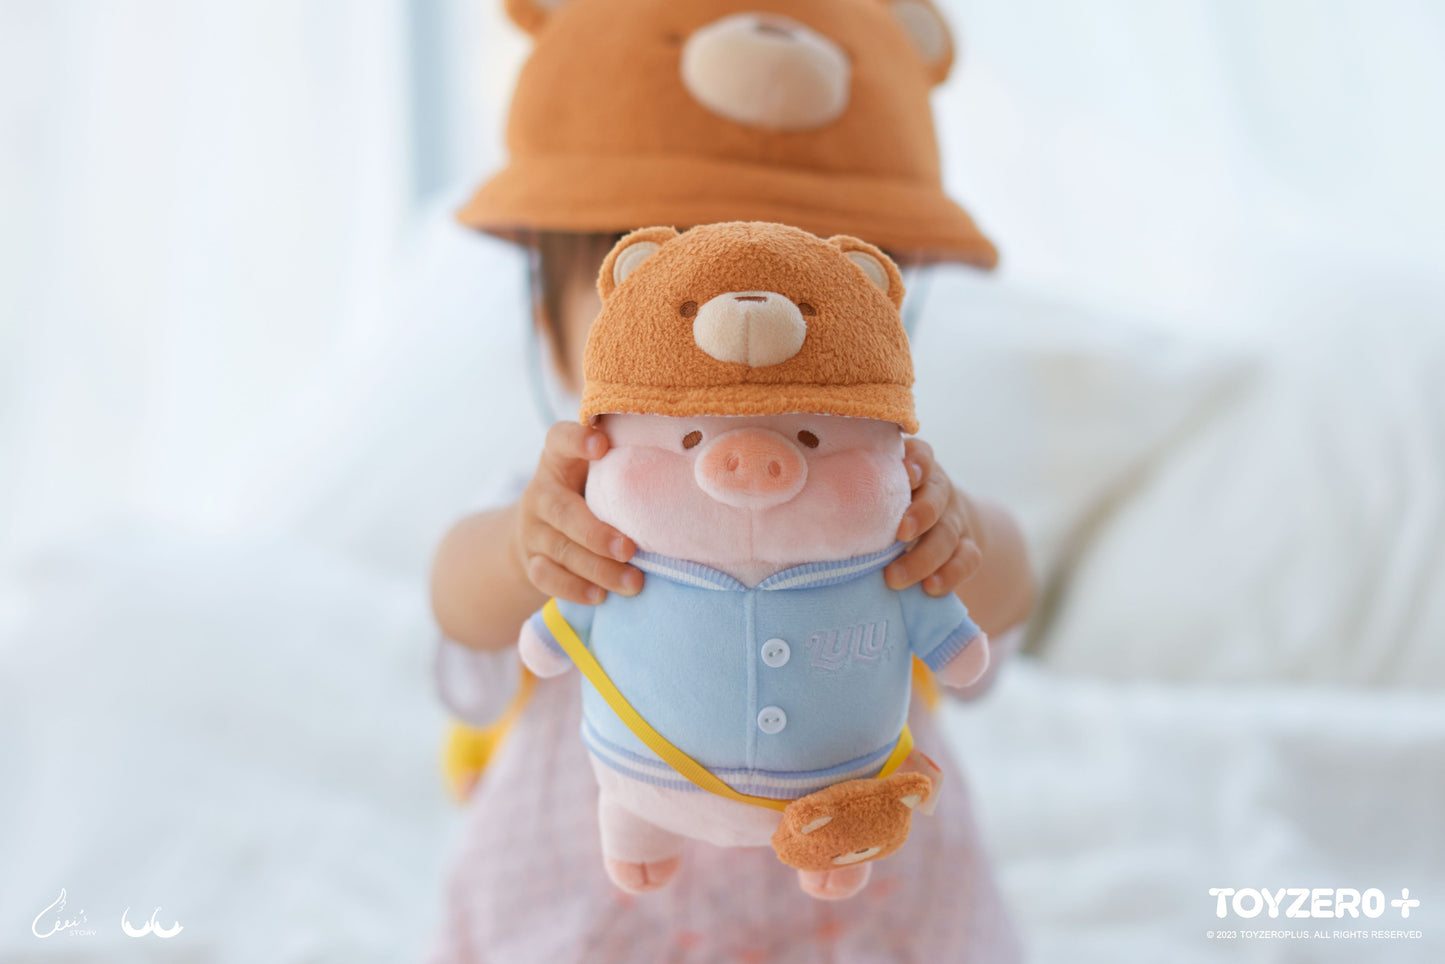 LuLu the Piggy Find Your Way - 18cm LuLu is Ready! Plush Toy (BLUE) 罐頭豬LuLu 旅行系列 -18cm LuLu is Ready! 毛絨公仔 (Blue)